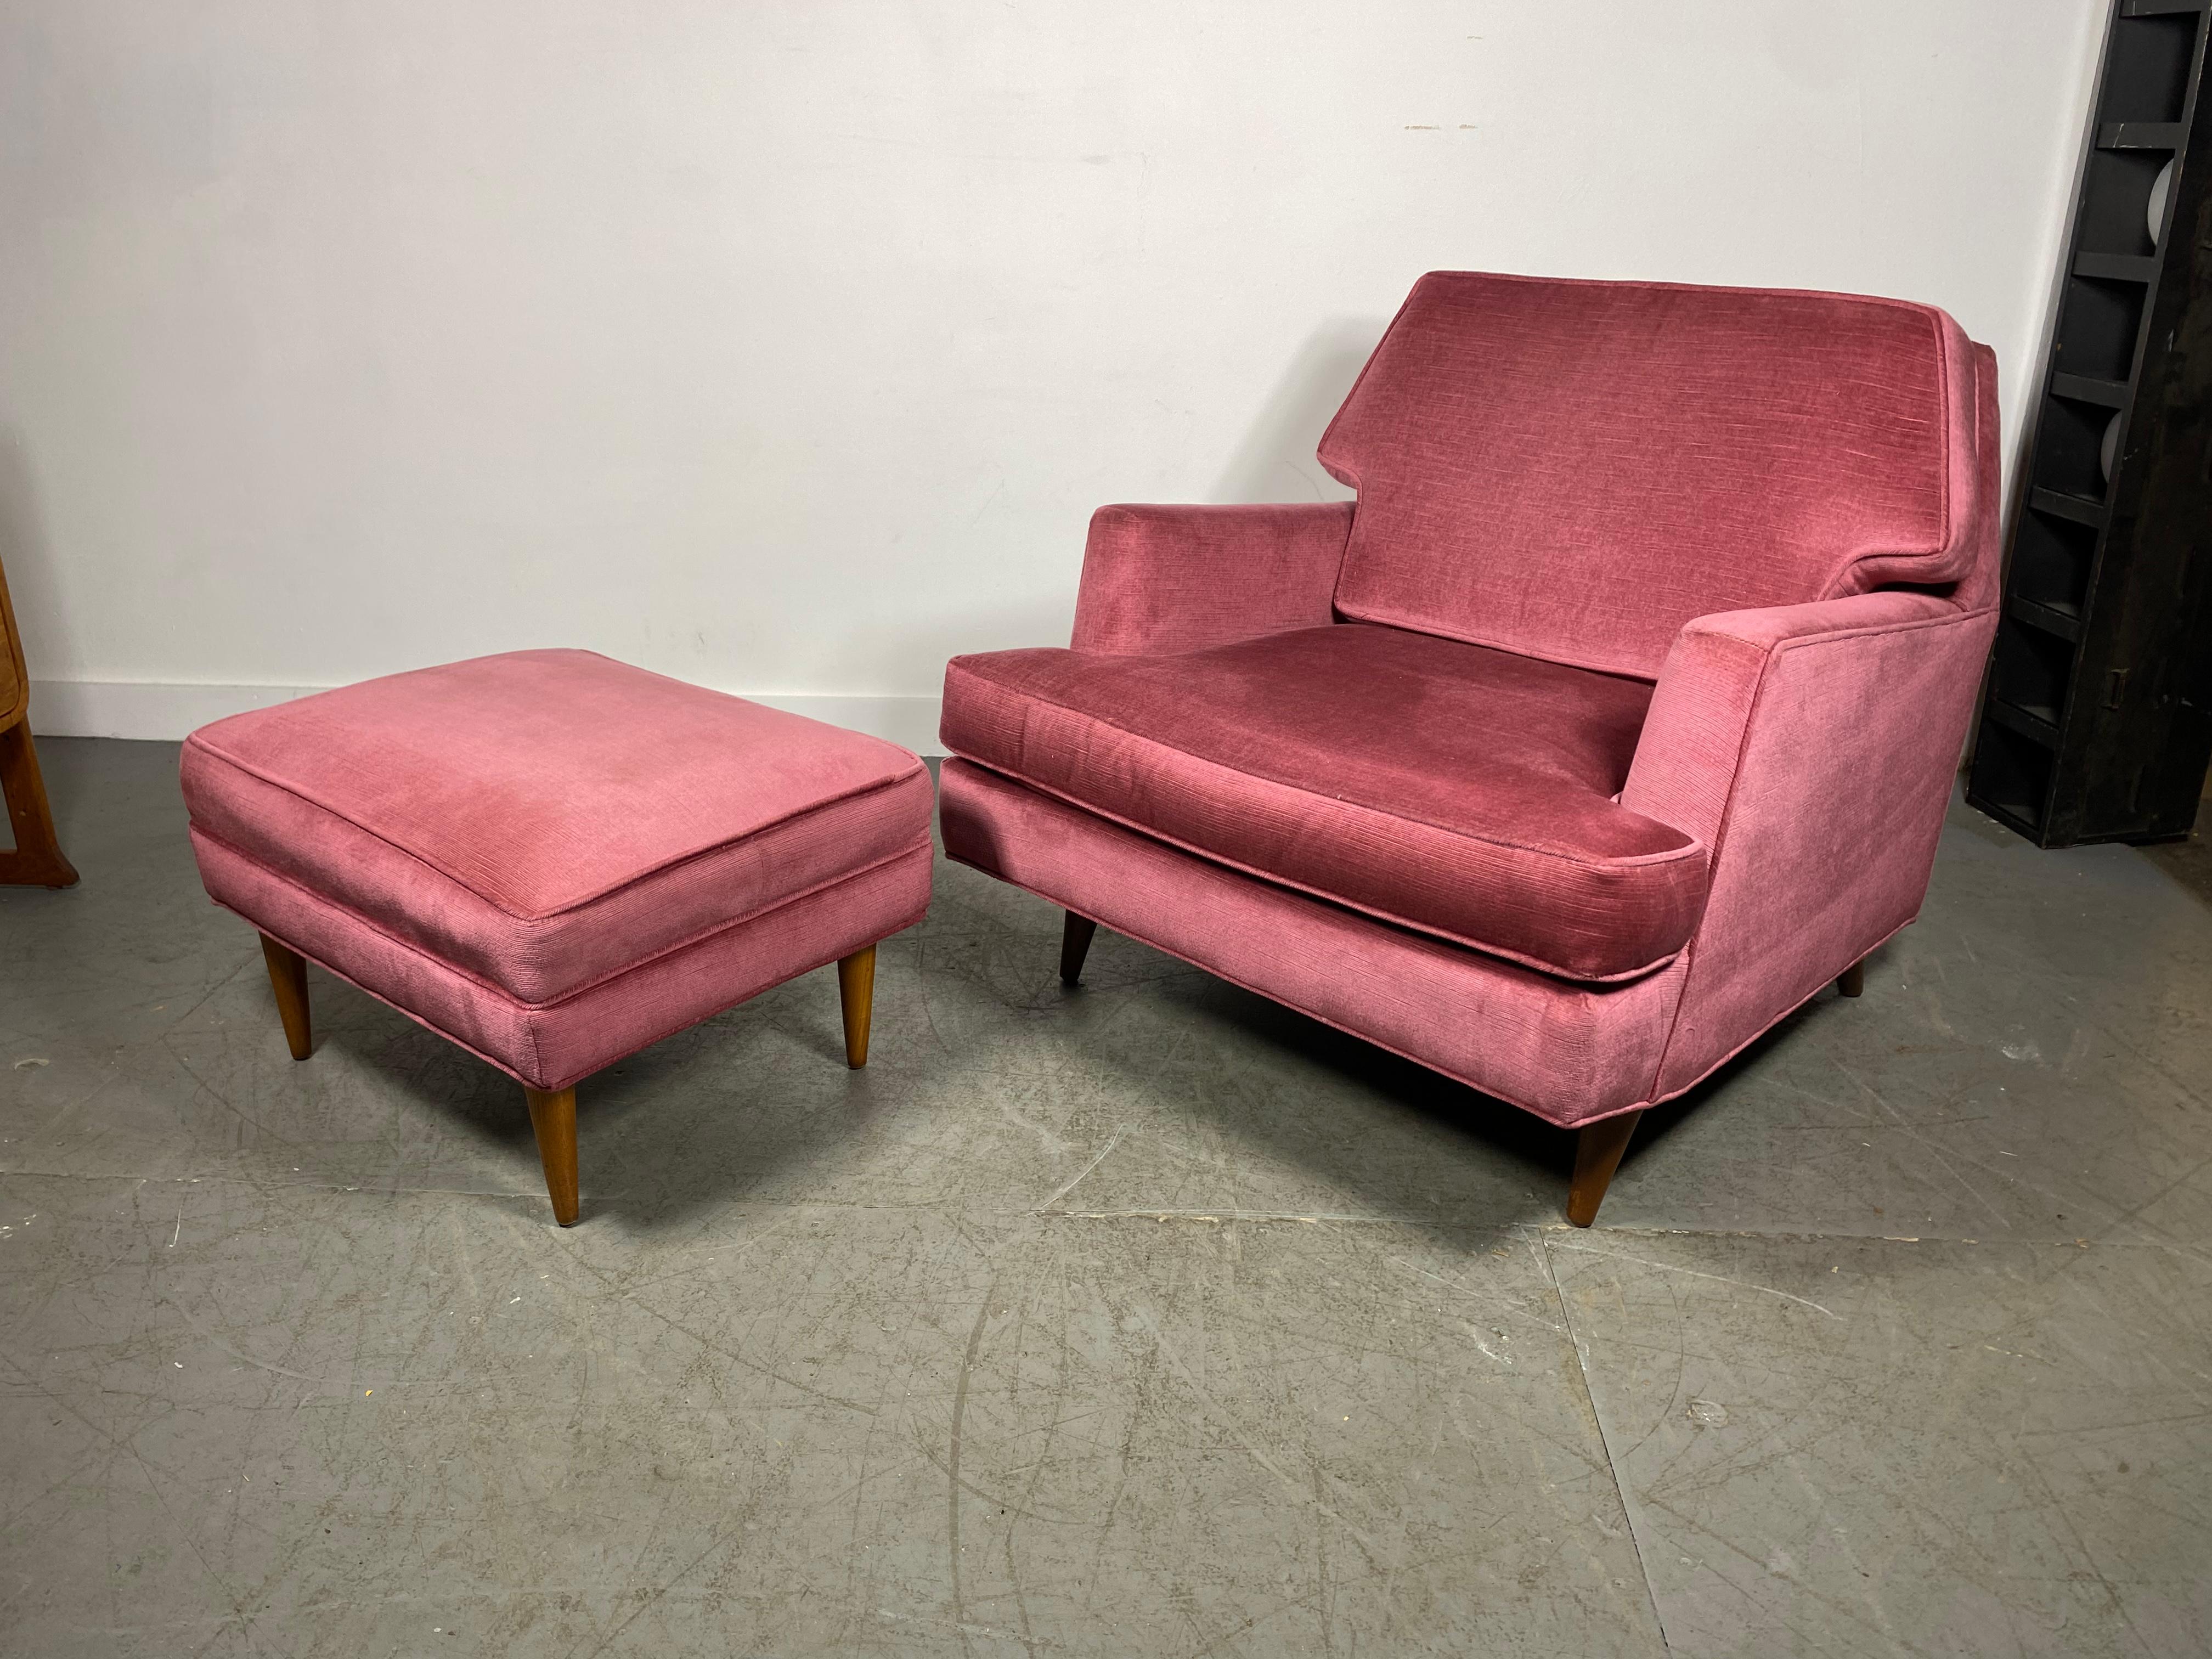 Stunning Modernist Lounge Chair & Ott Oman by Roger Springer for Dunbar For Sale 1